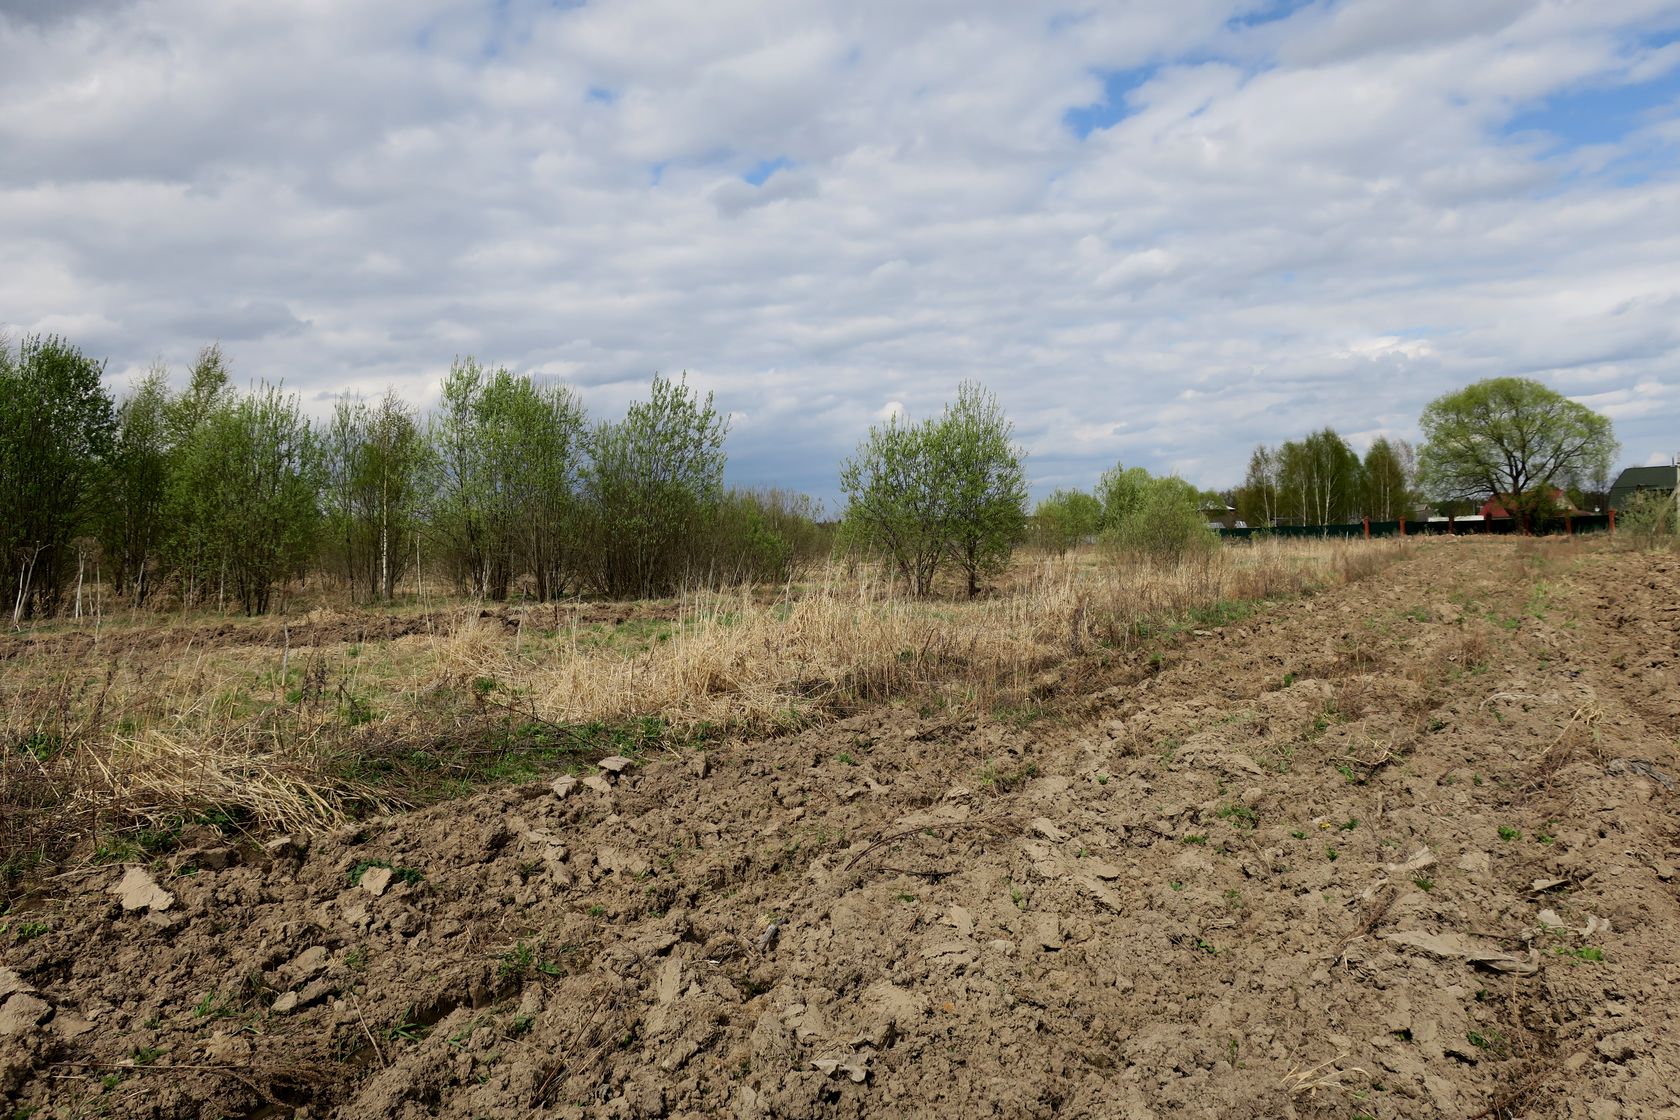 Ярцево, image of landscape/habitat.